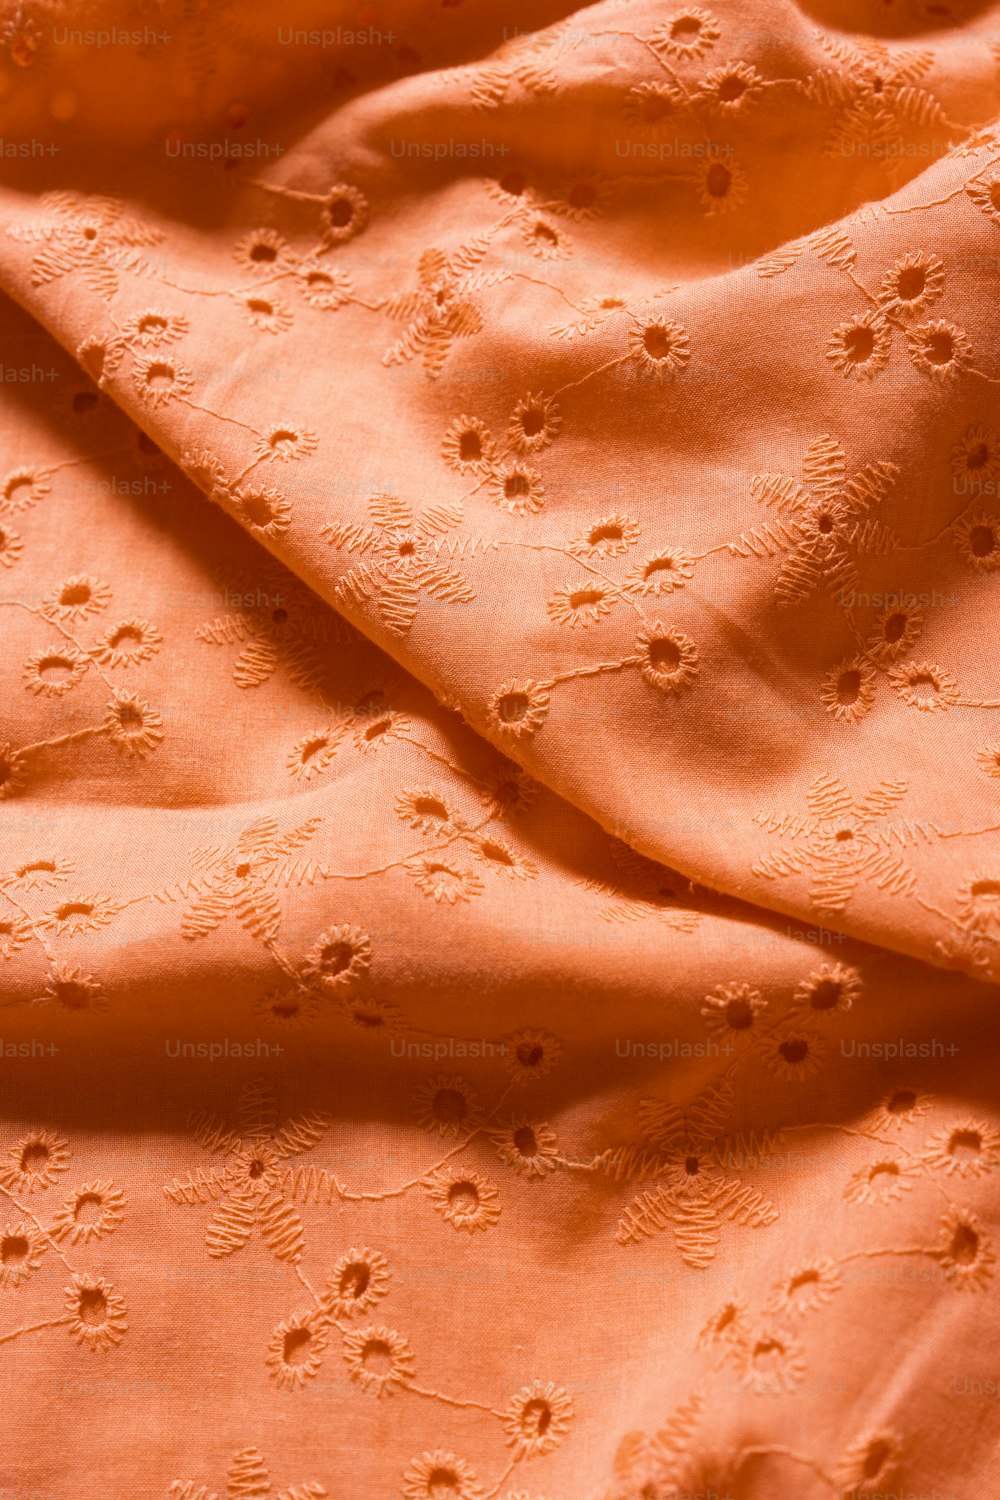 Un primer plano de una tela naranja con pequeños puntos